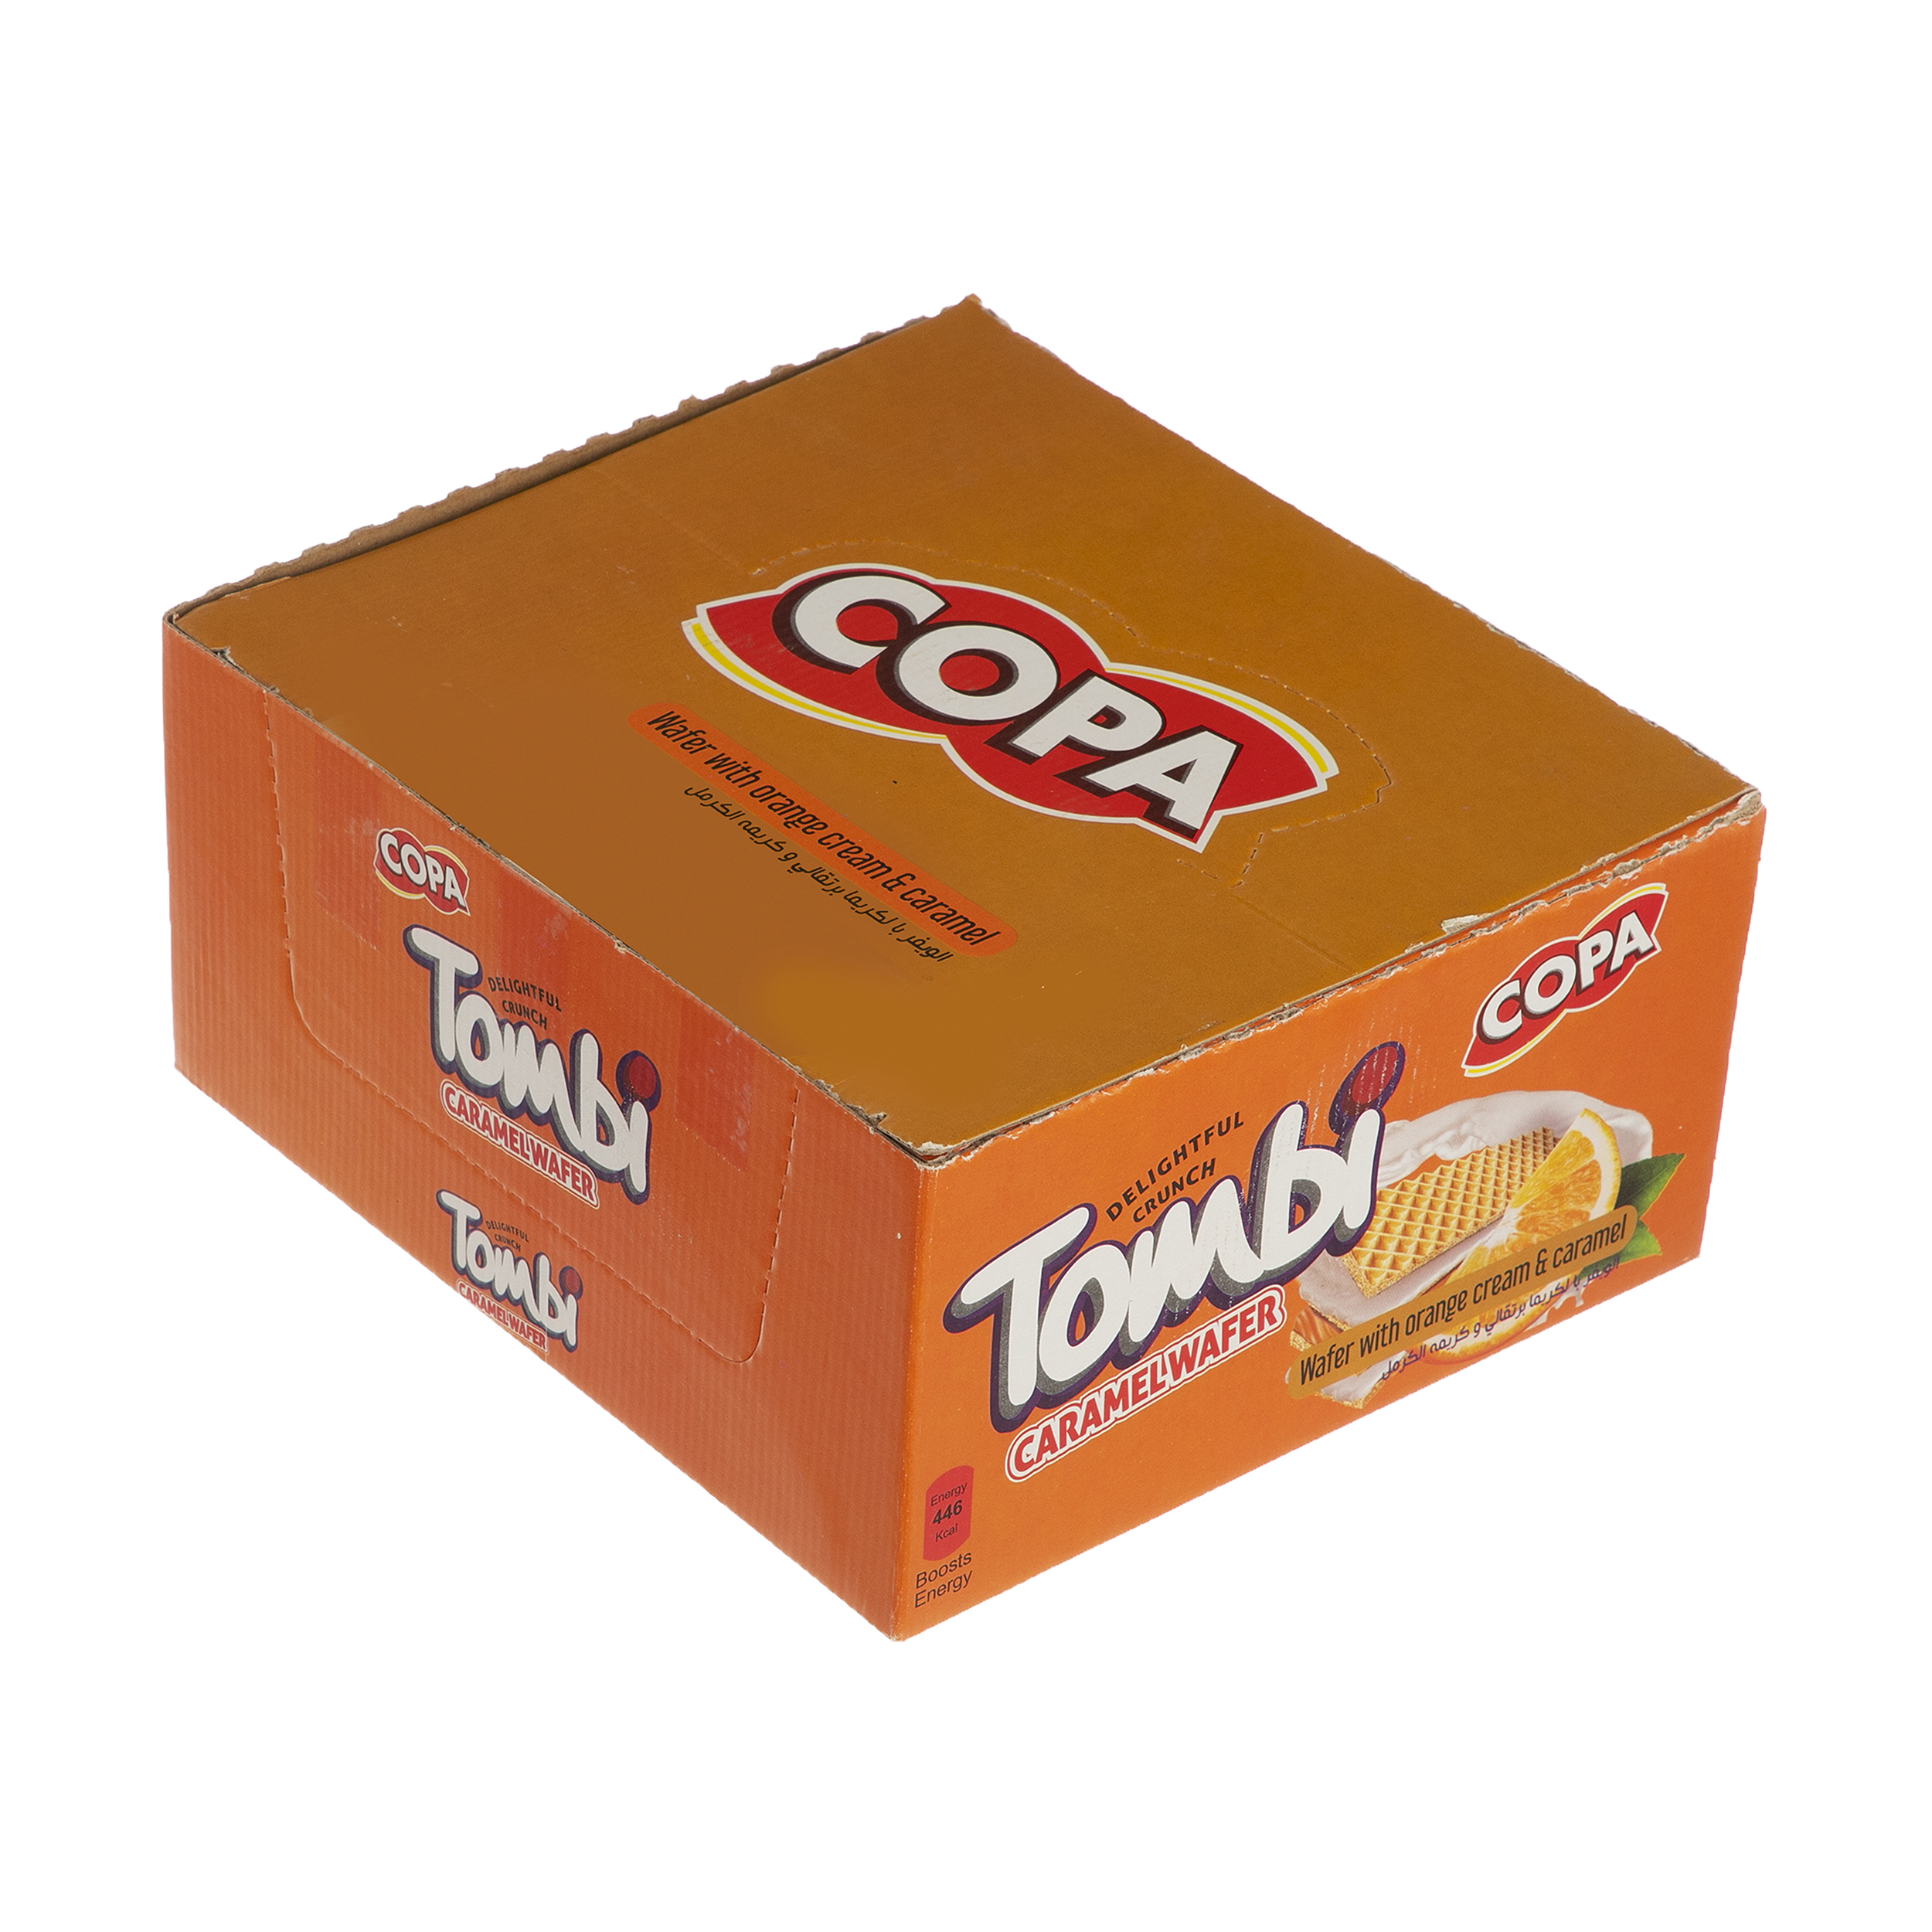 ویفر تامبی کوپا با طعم پرتقال - 18 گرم بسته 30 عددی